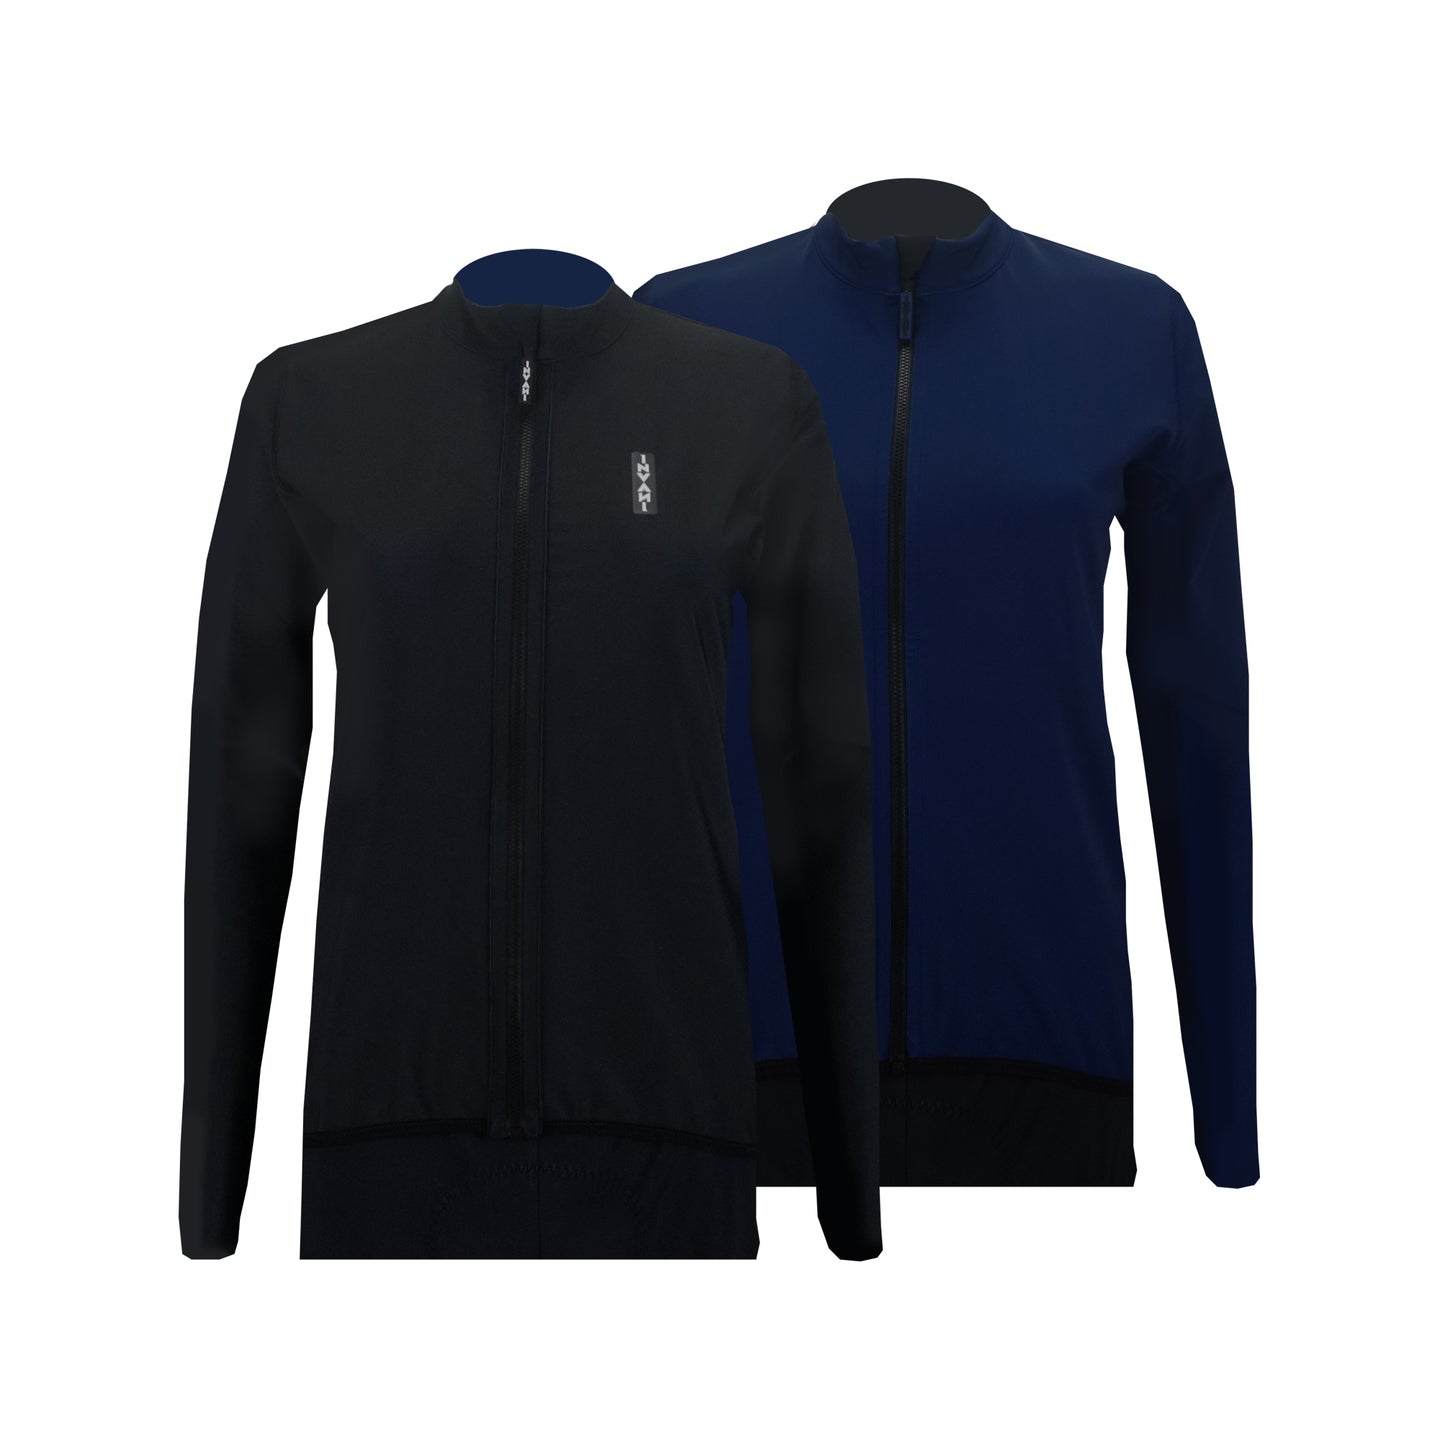 Reversible Long Sleeve Jersey: Black / Blue (Women's)